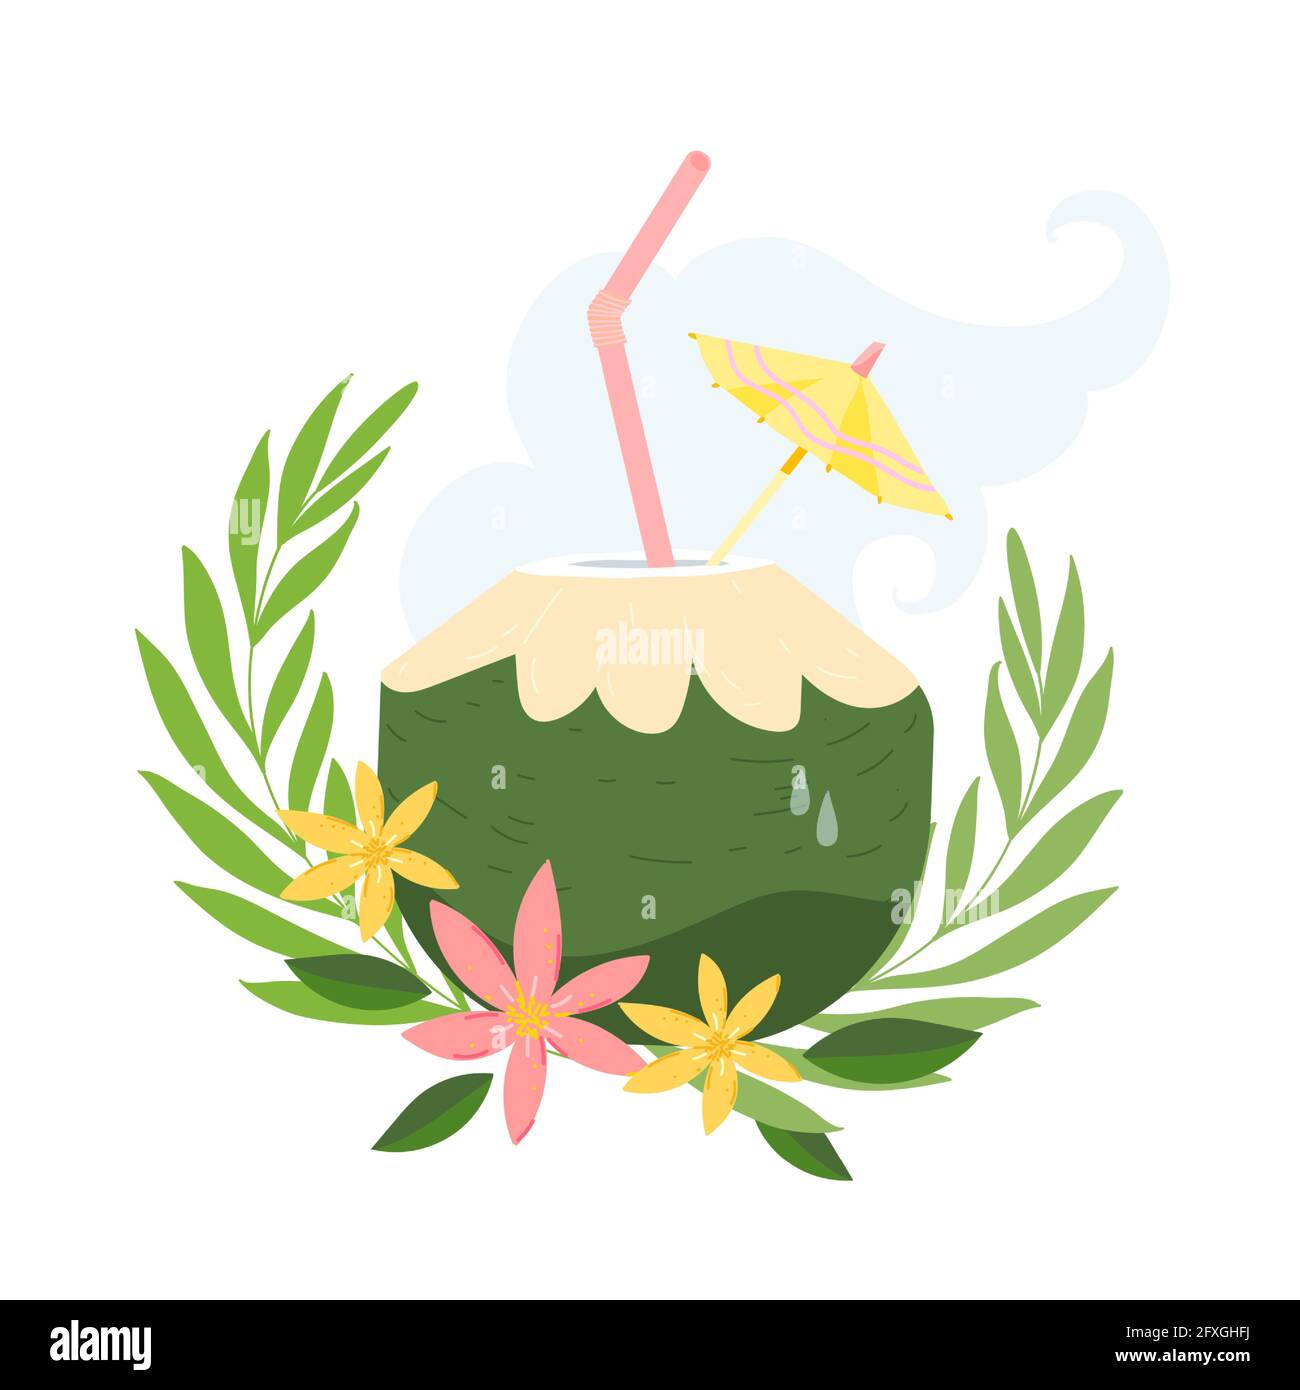 Grüner junger frischer Kokosnusscocktail mit Stroh und Regenschirmauflage. Vektor-Illustration mit jungen Kokosnuss in einem Cartoon-Stil. Gut für Sommer-Menü, sei Stock Vektor